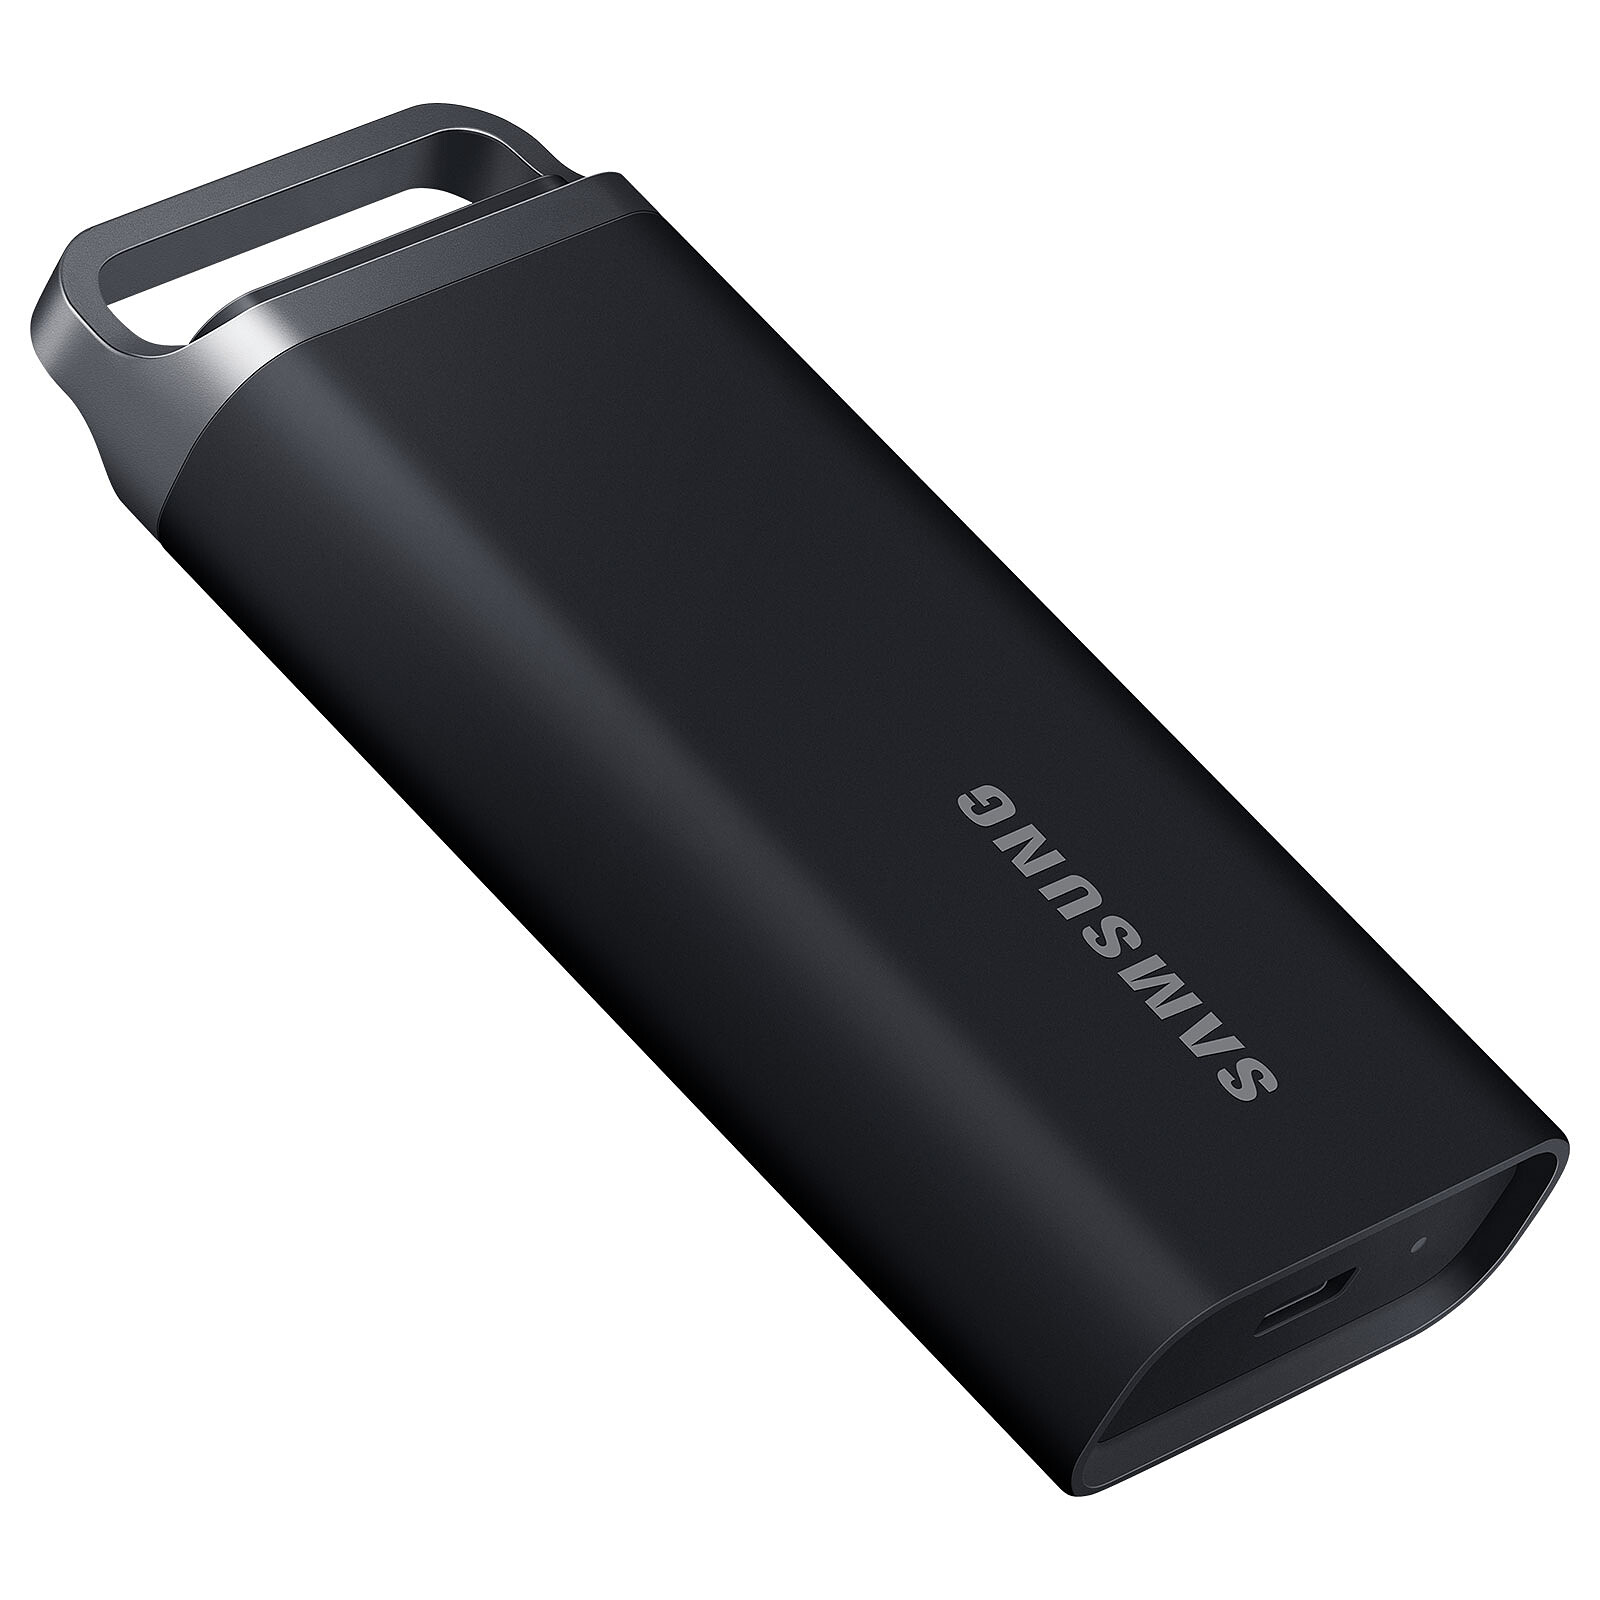 SSD portatile Samsung T5 EVO 8TB - Hard disk esterno - Garanzia 3